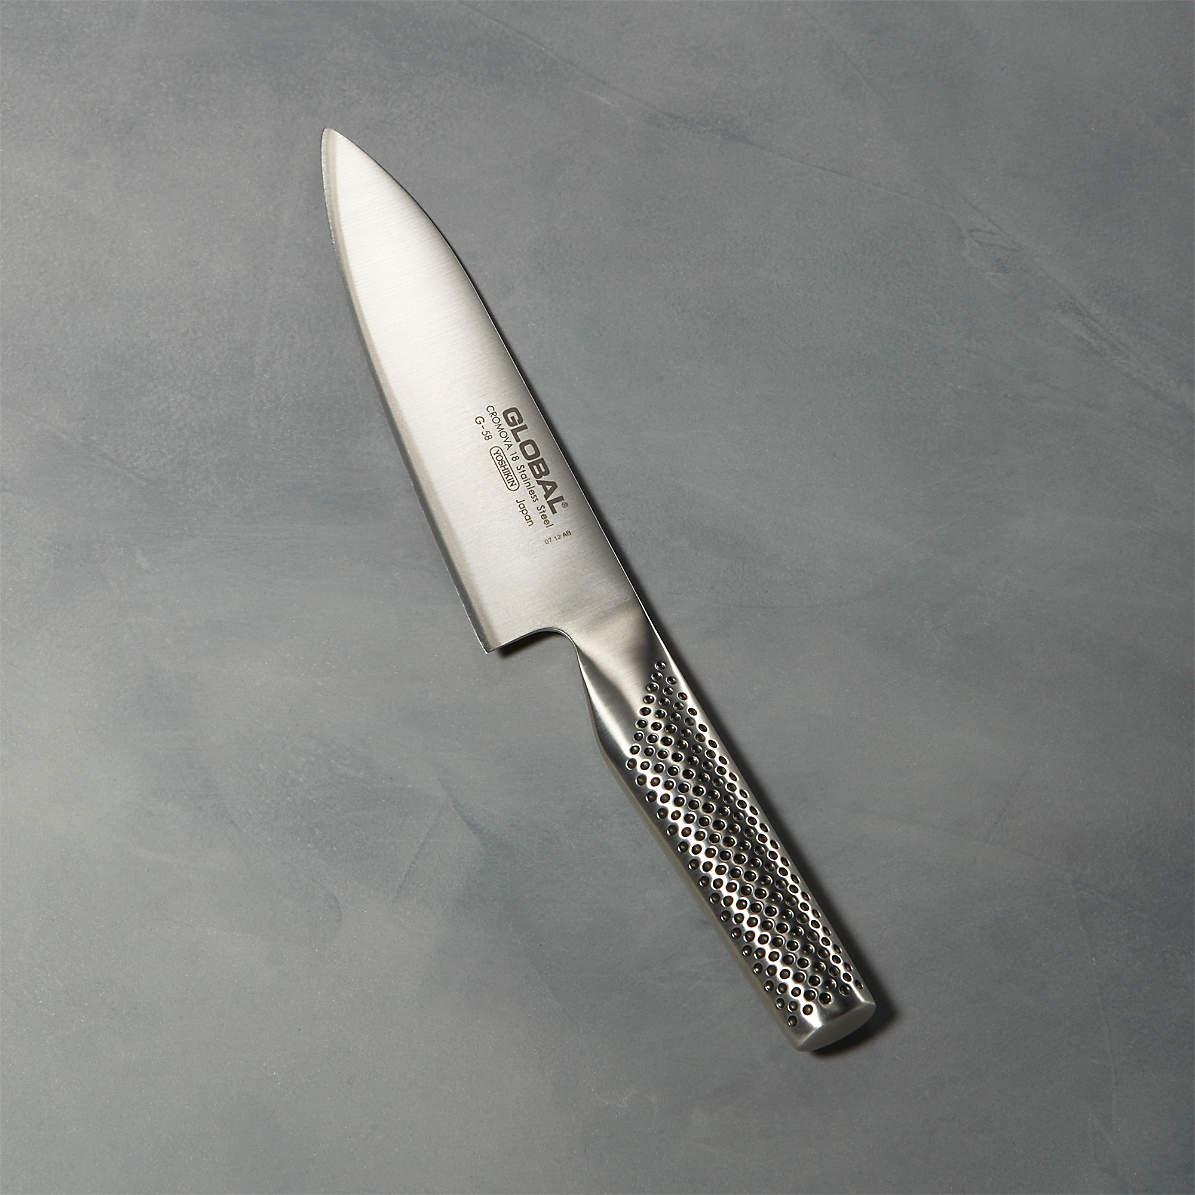 Global 6 Chef's Knife